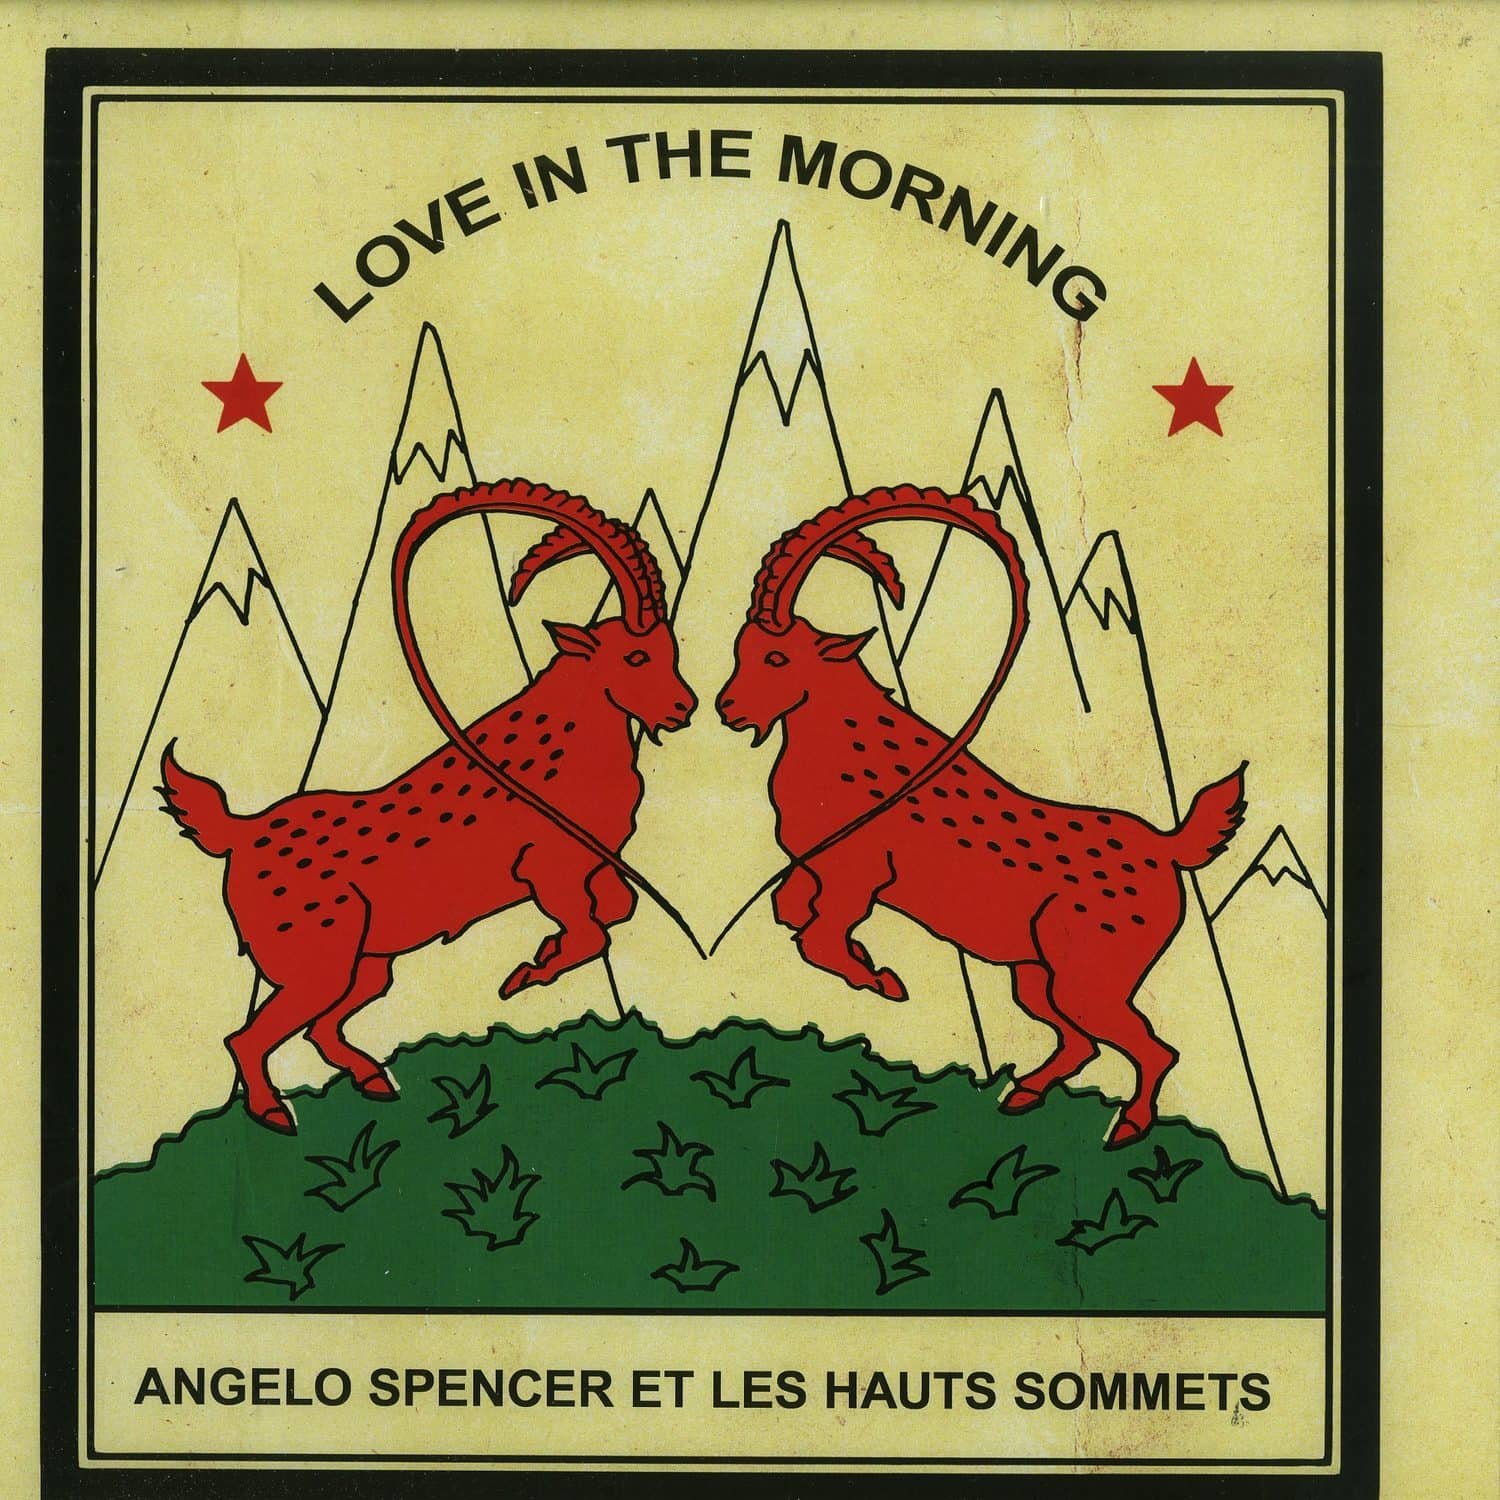 Angelo Spencer Et Les Hauts Sommets - LOVE IN THE MORNING 